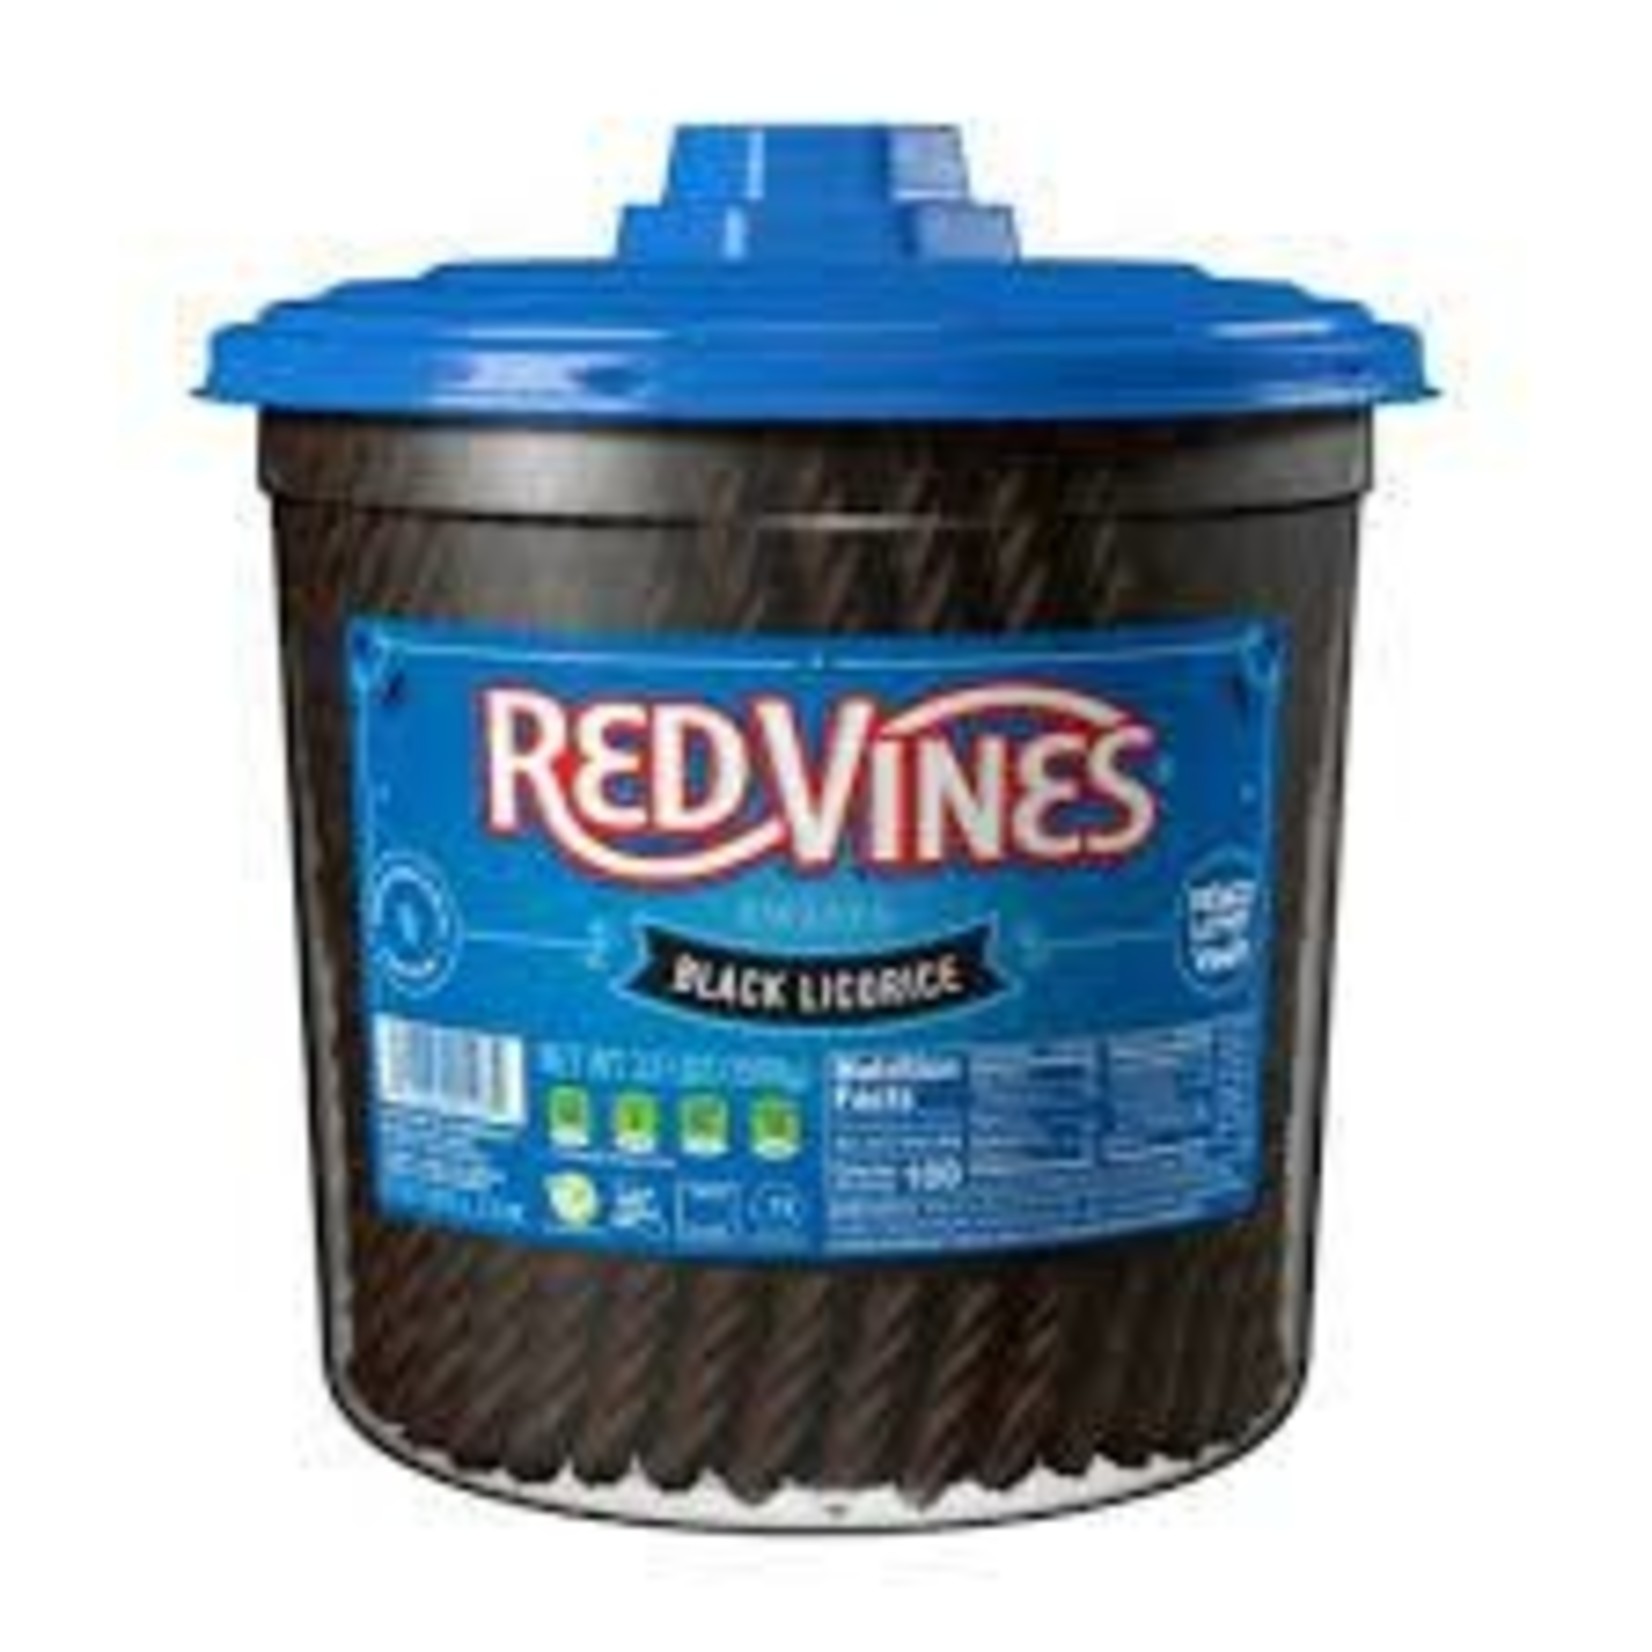 RedVines Black Licorice